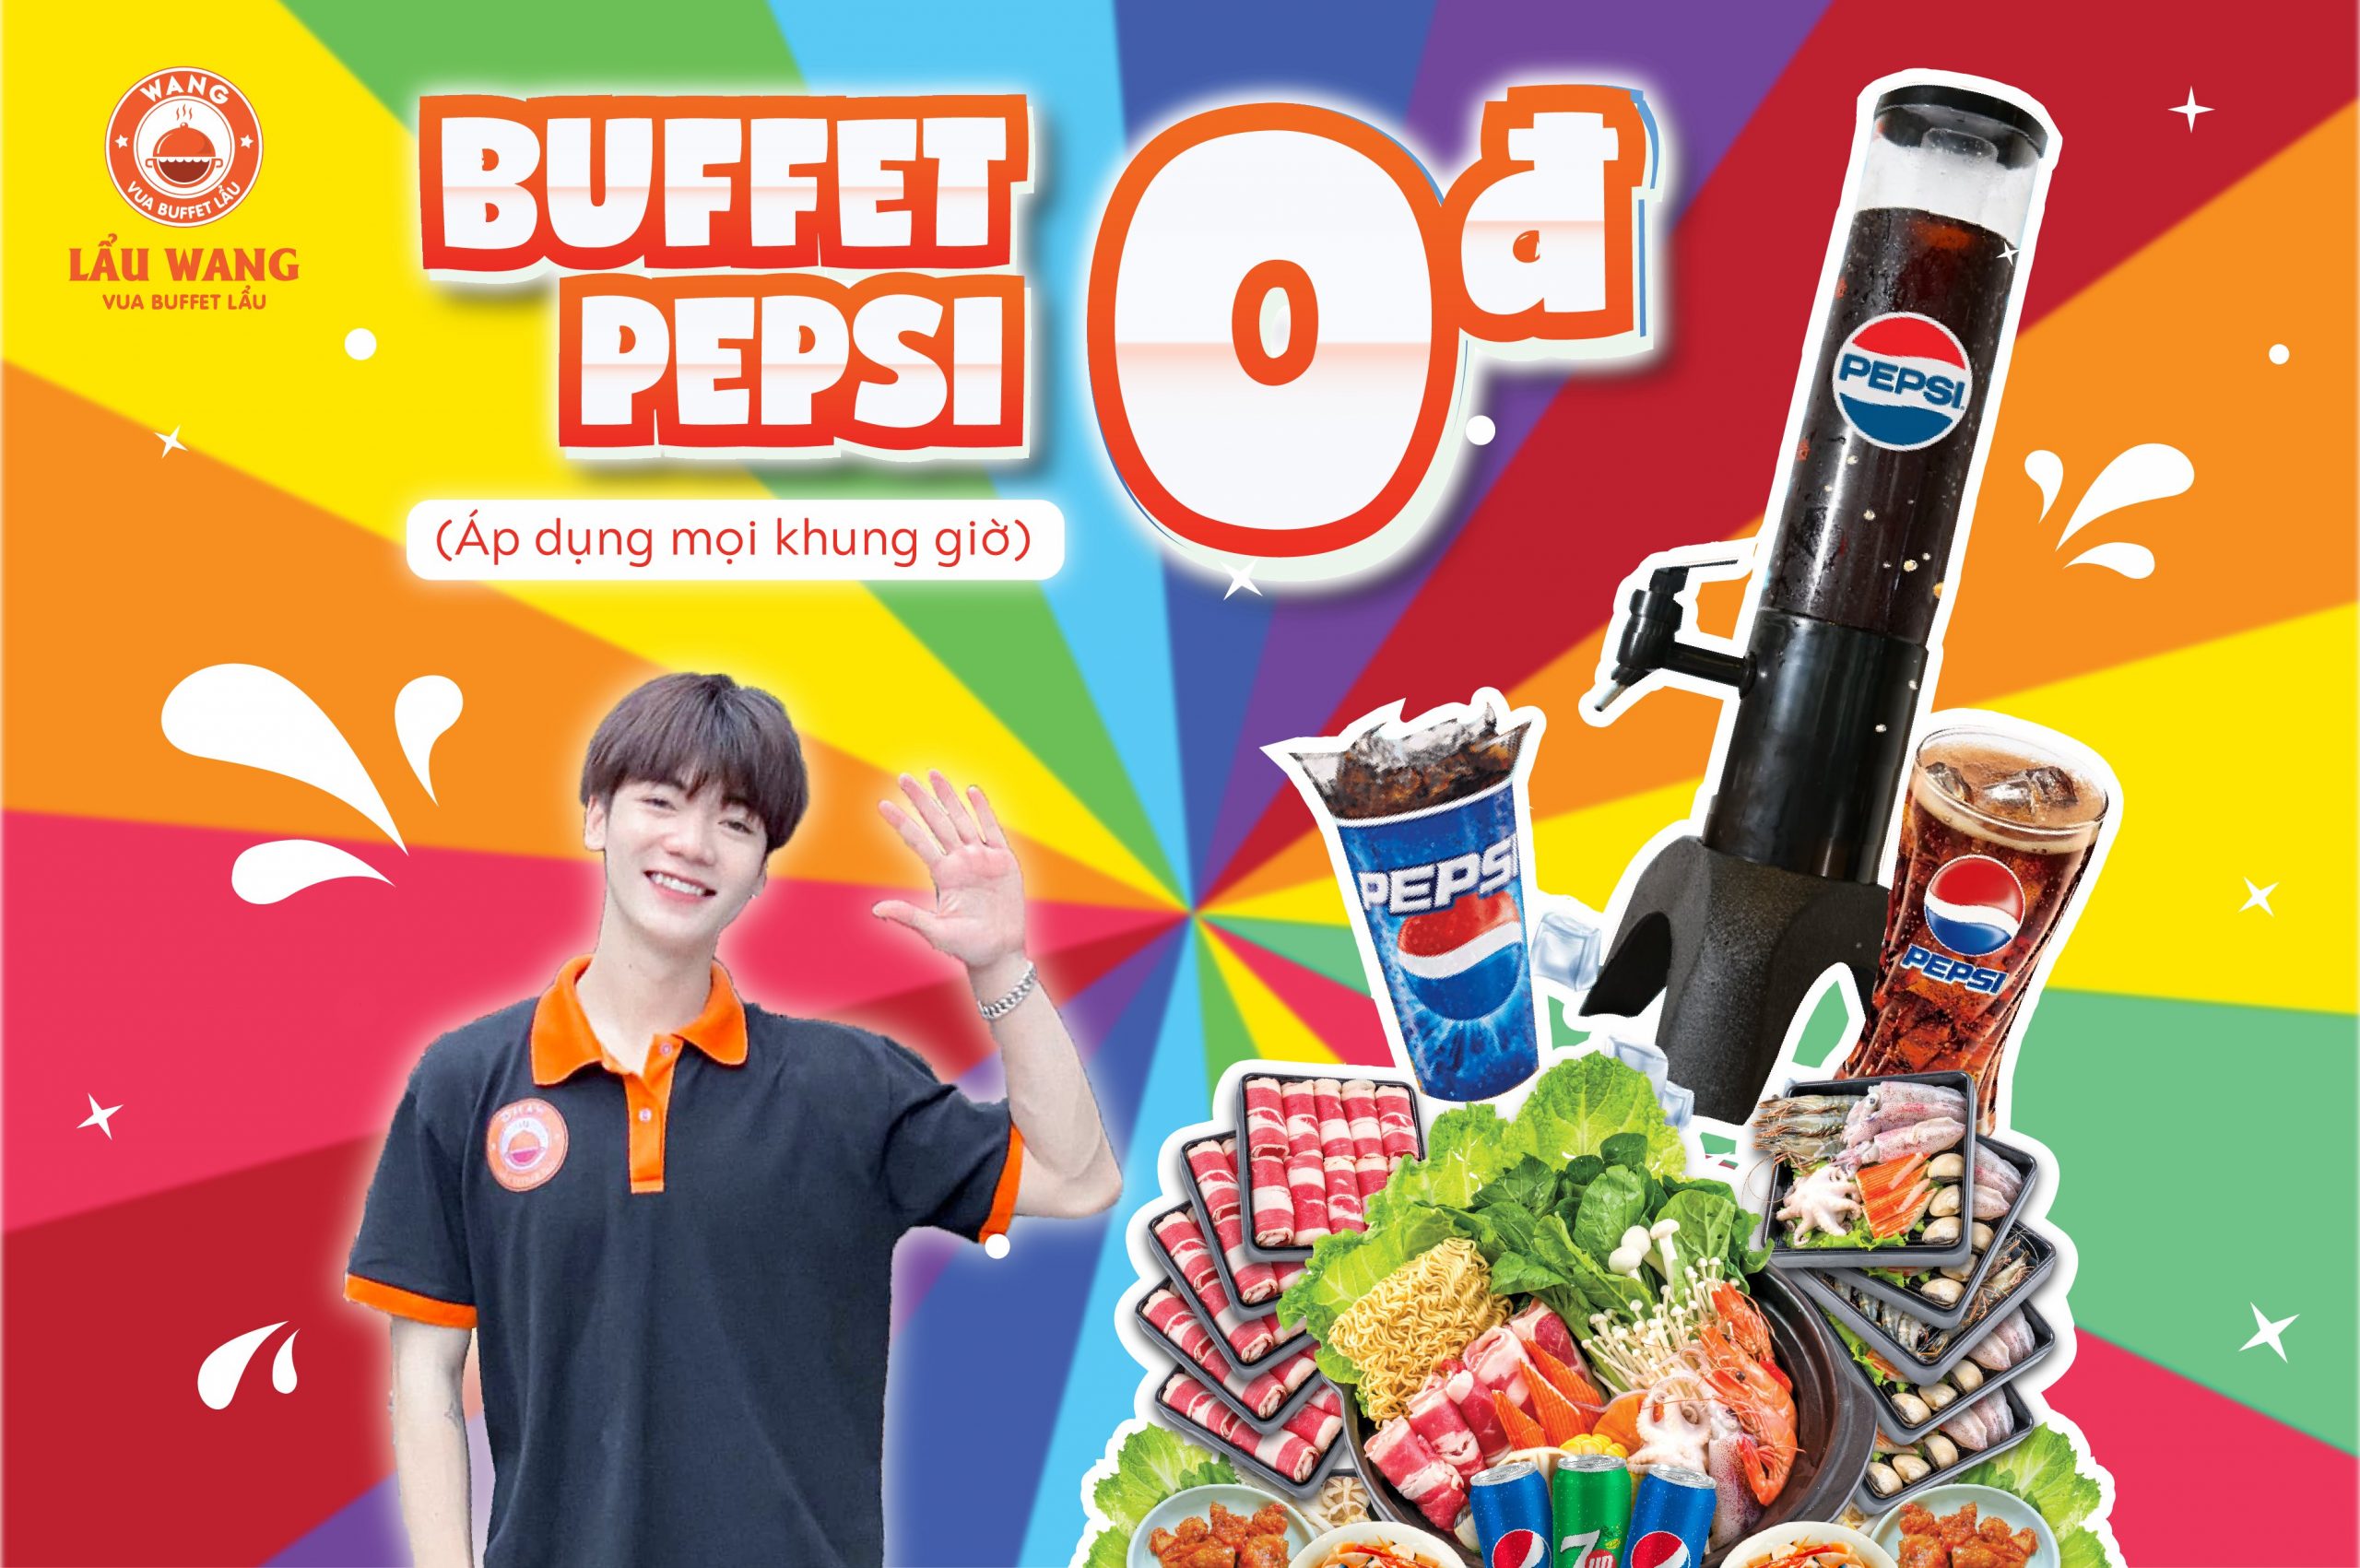 Lẩu Wang Free Buffet Pepsi Cho Cuộc Vui Bất Tận | Lẩu Wang